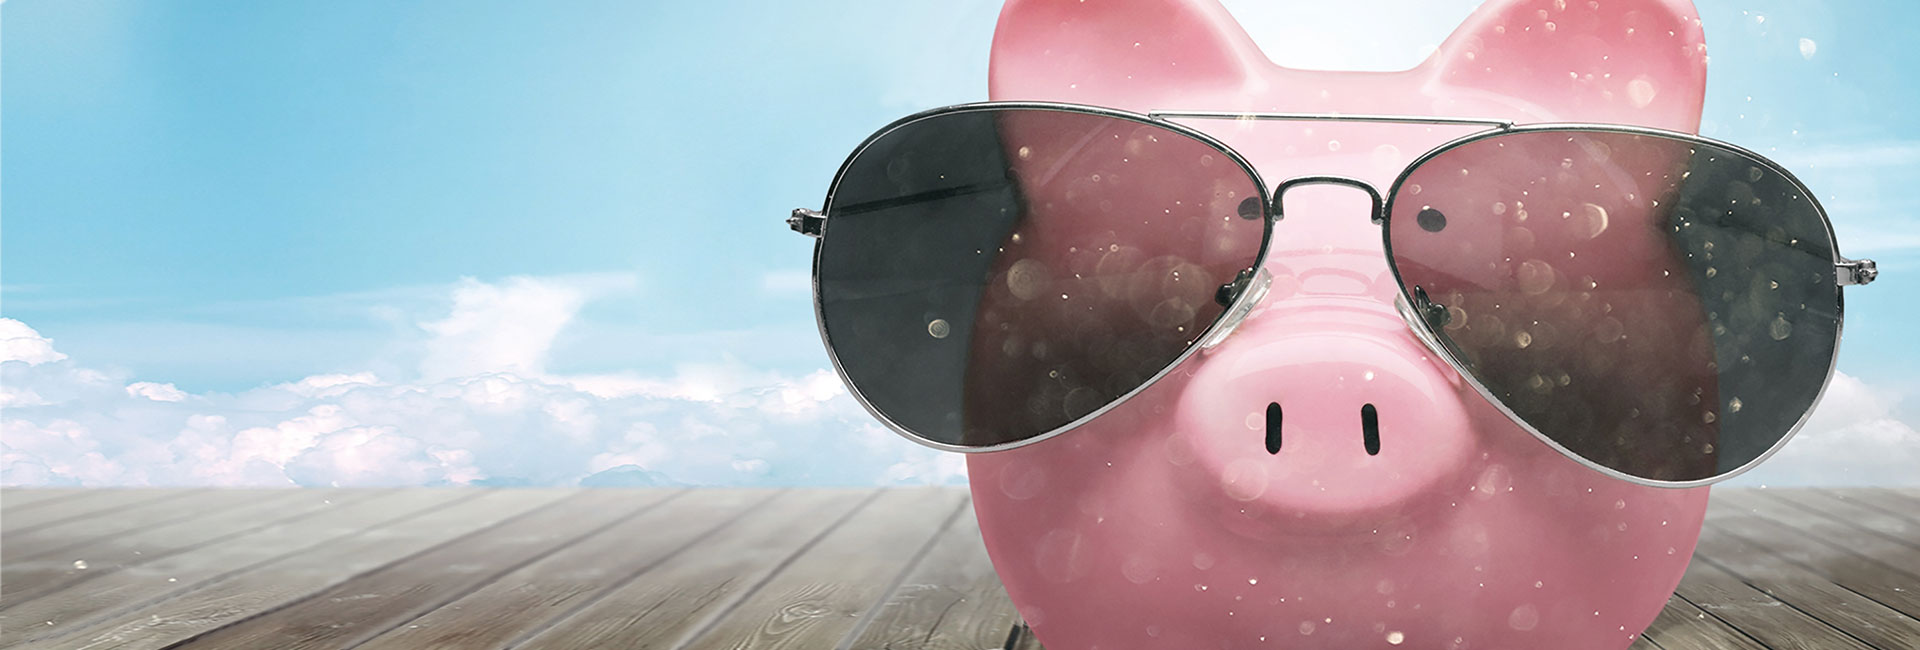 Pinkes Schweinchen mit Sonnenbrille - Coole Sau gesucht! Alcatherm Stellenangebote